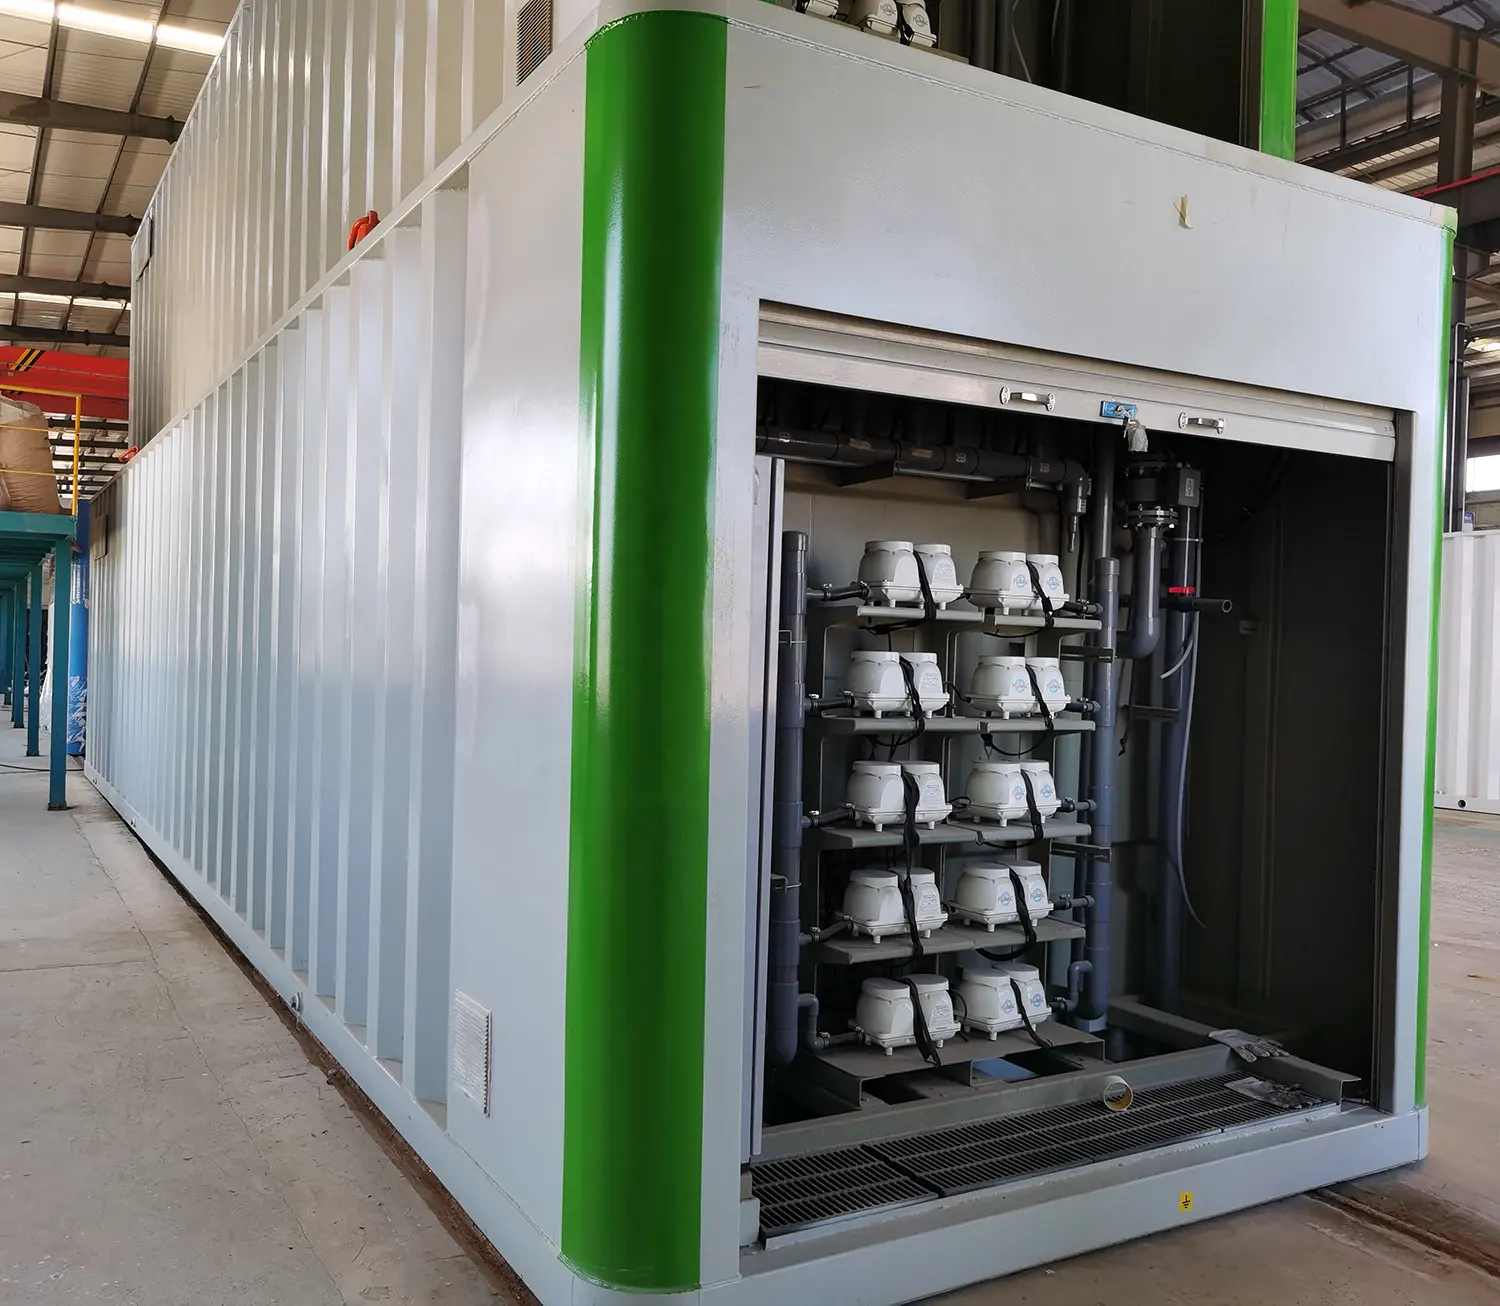 MBBR paket pembibitan dan pemotongan unggas dalam kontainer sistem tanaman perawatan air limbah